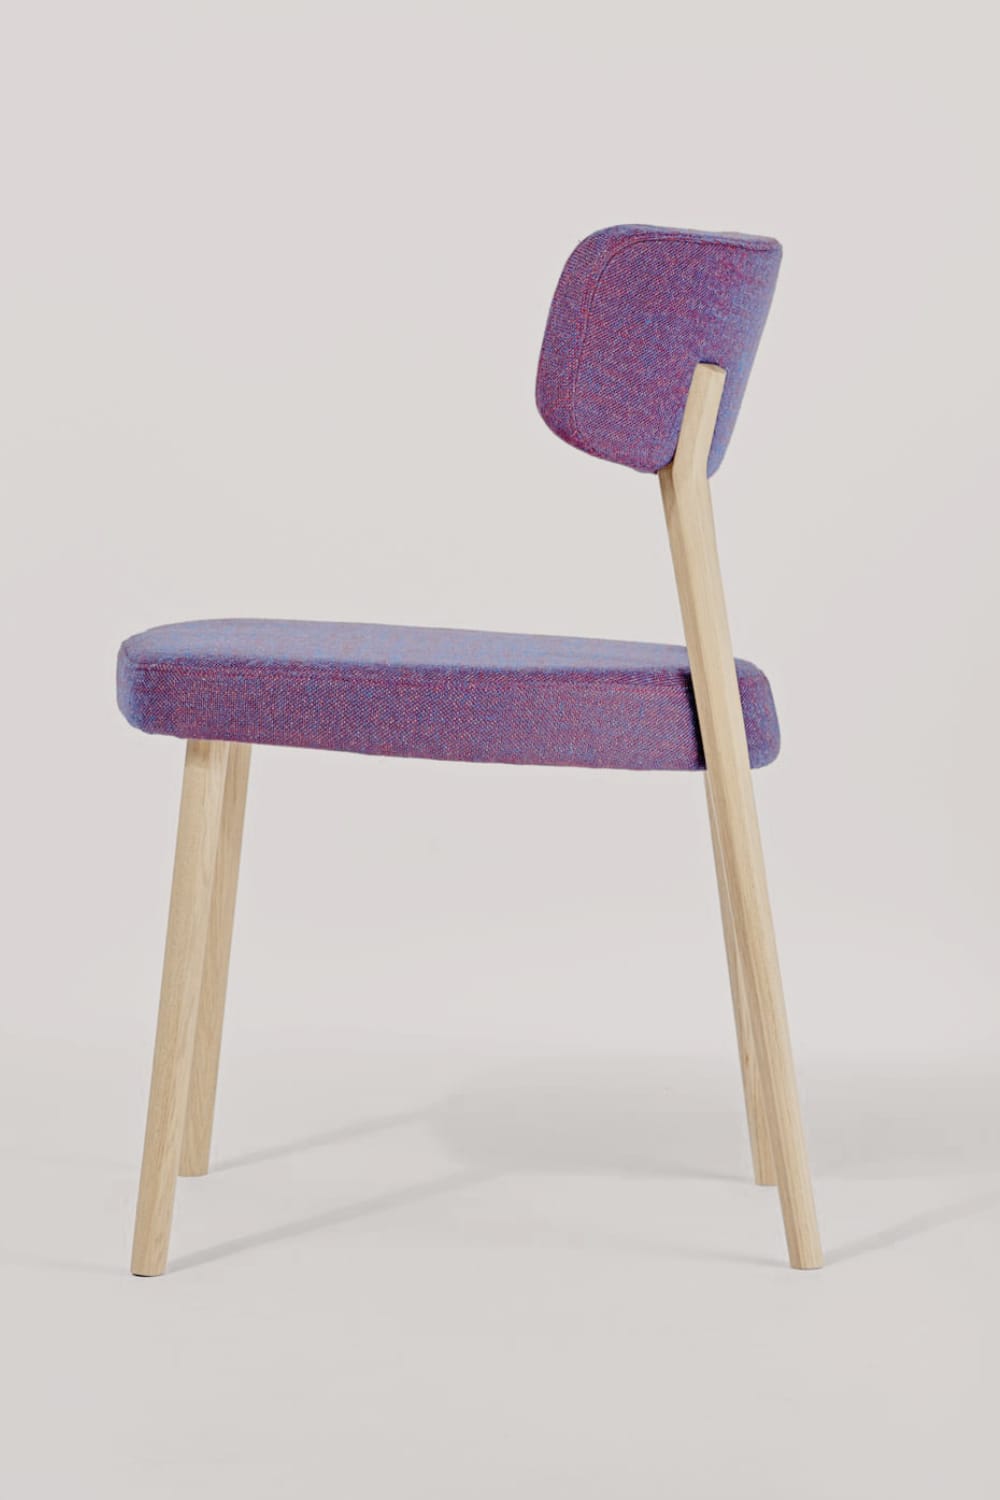 Marlon Dining Chair Stuhl mit breiter Rücken- und Sitzfläche in moderner dynamischer Form mit hellem Stoff überzogen und hellen Beinen aus Holz mit schlichtem Tisch